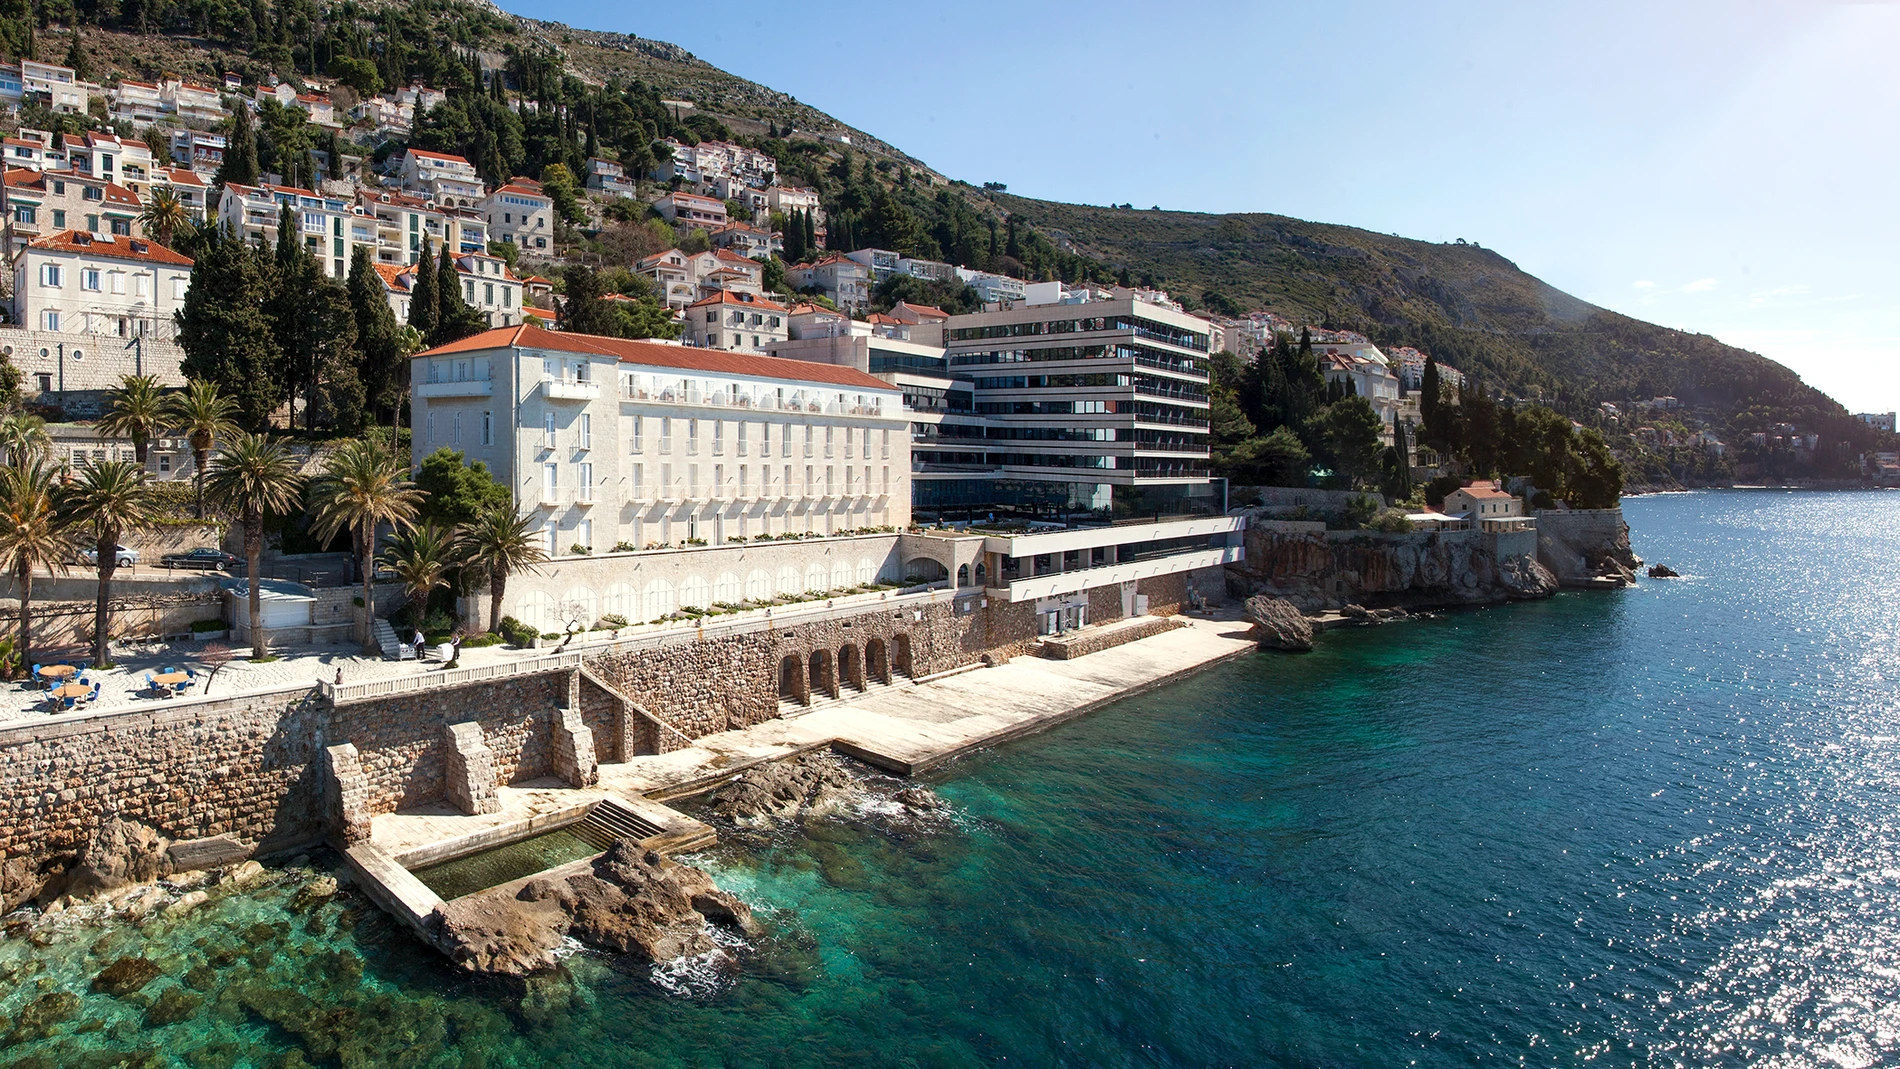 Uno de los lugares icónicos de la excepcional Dubrovnik, el Hotel Excelsior, que ha alojado a numerosas "celebrities"